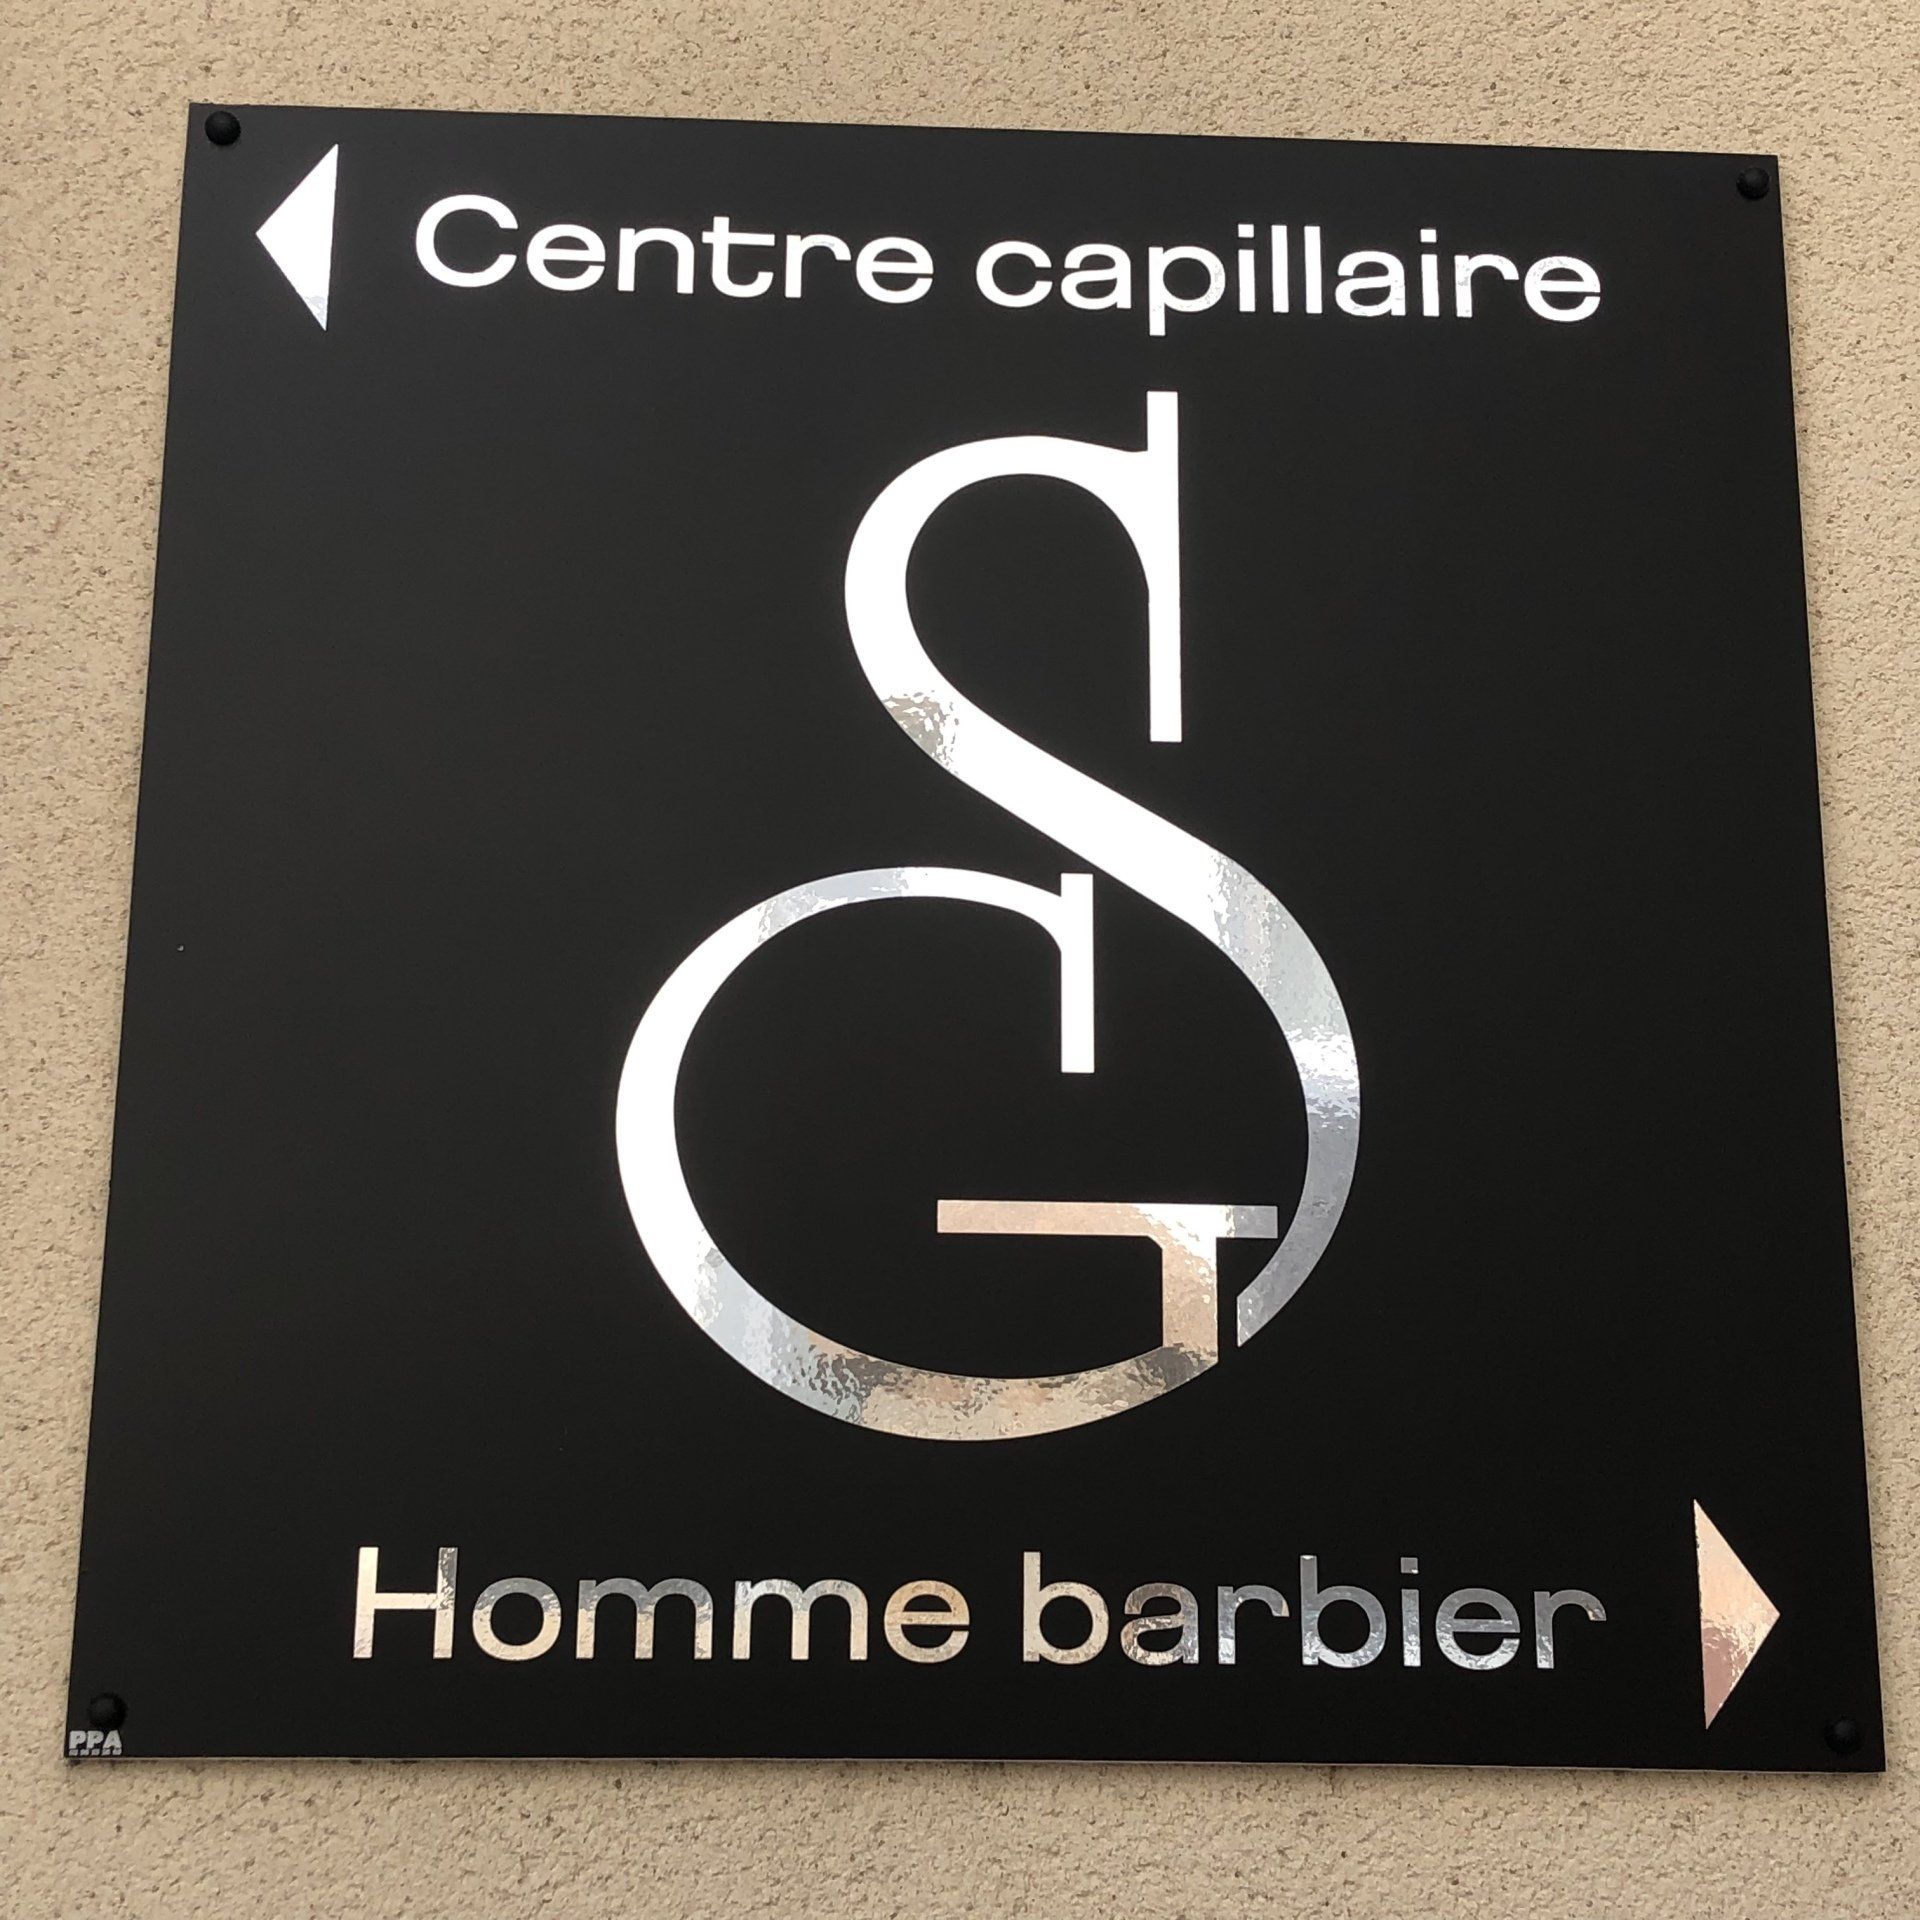 Centre capillaire et homme barbier